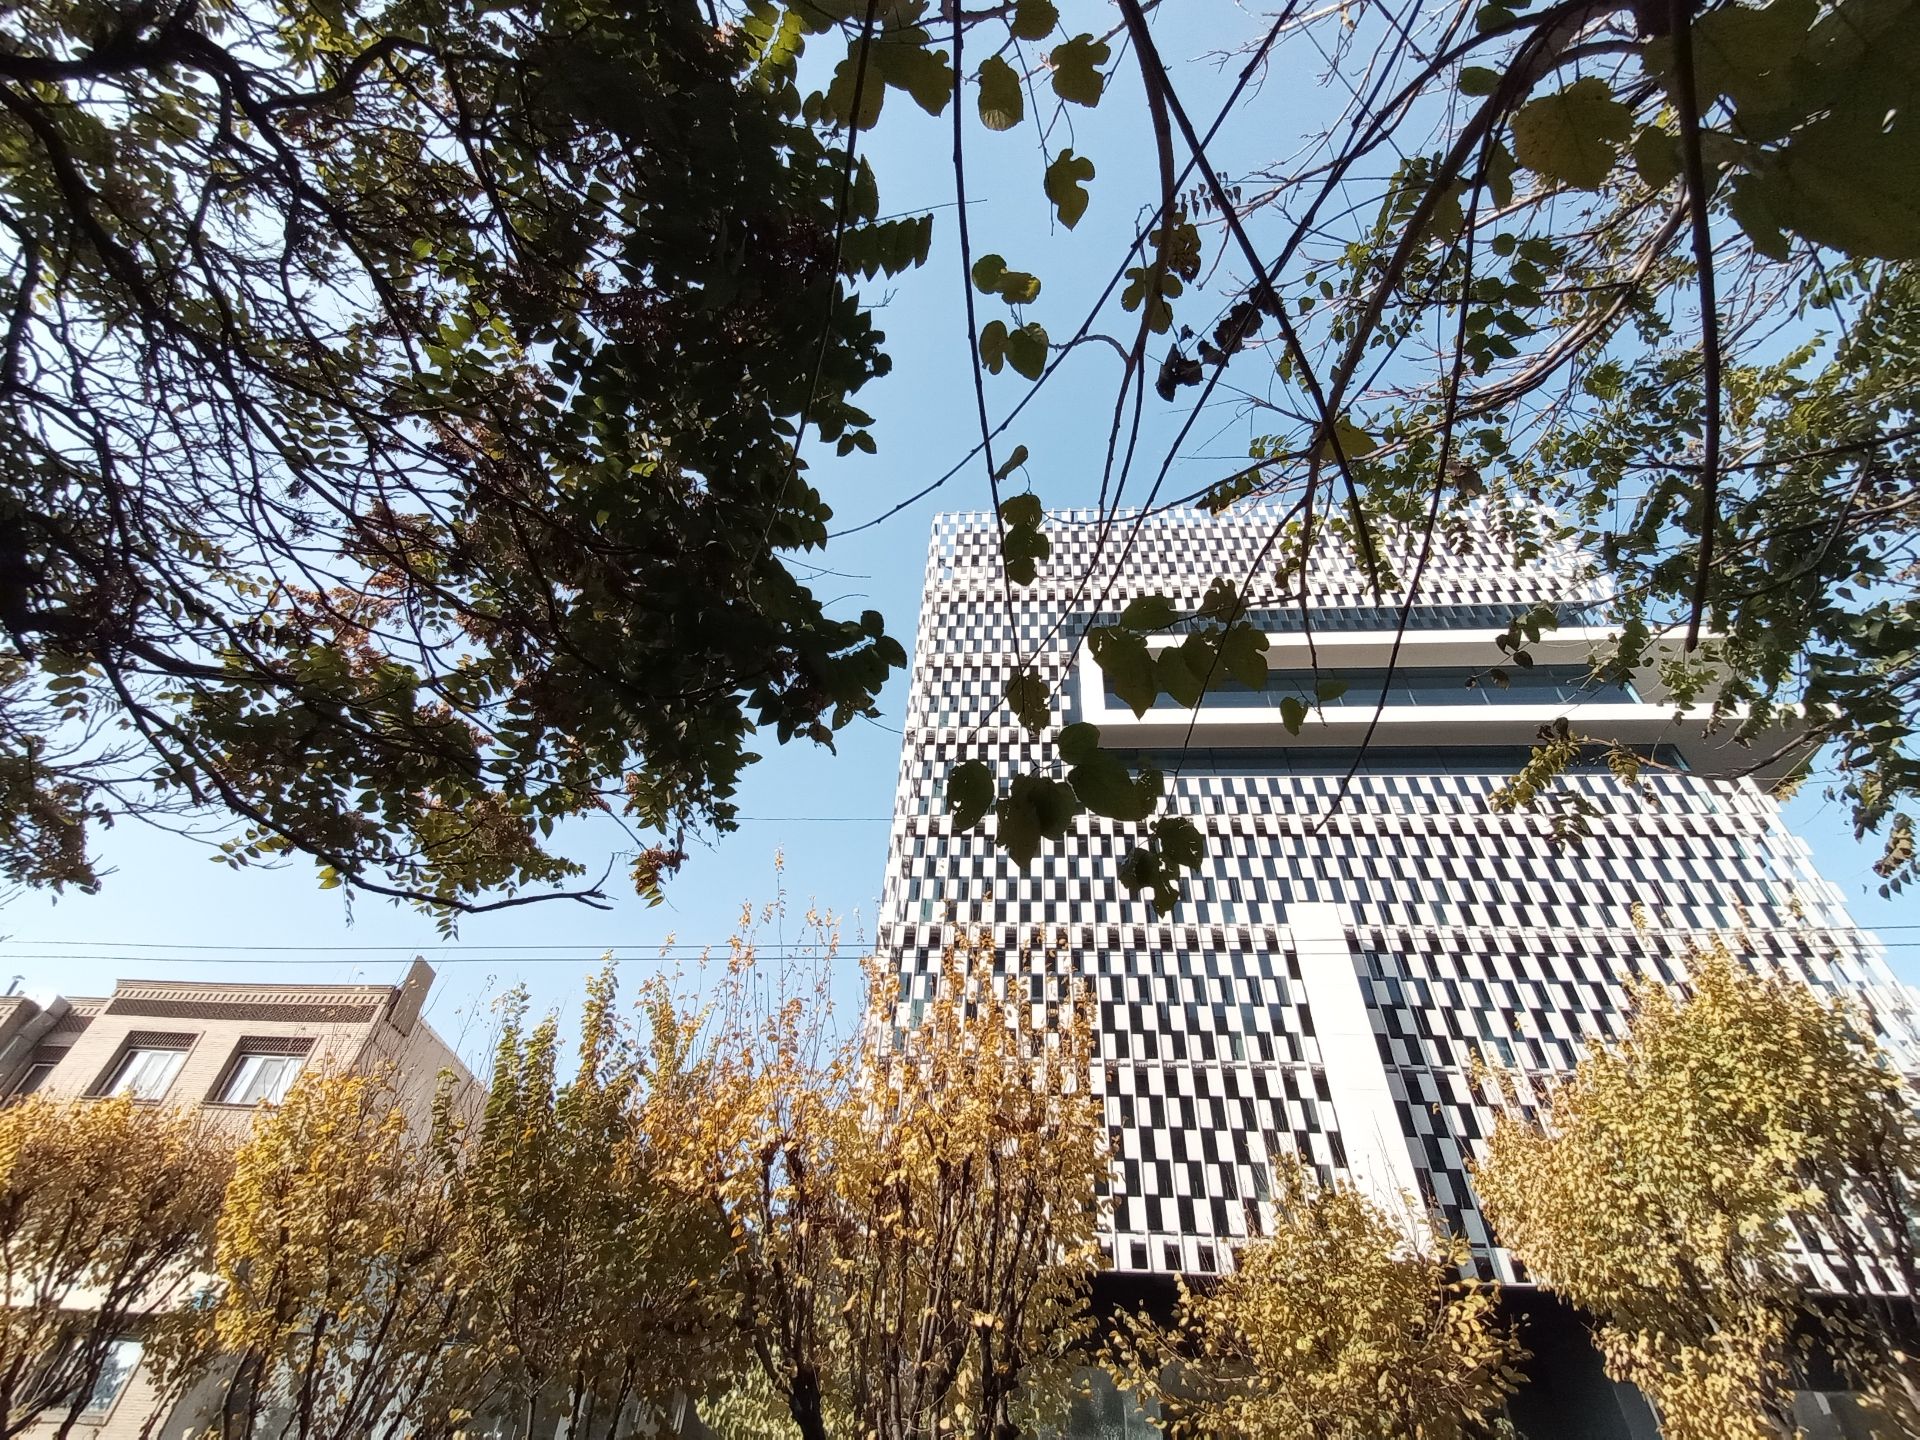 مرجع متخصصين ايران نمونه عكس دوربين اولتراوايد موبايل هواوي Y9a در طول روز - ساختماني در خيابان جردن تهران